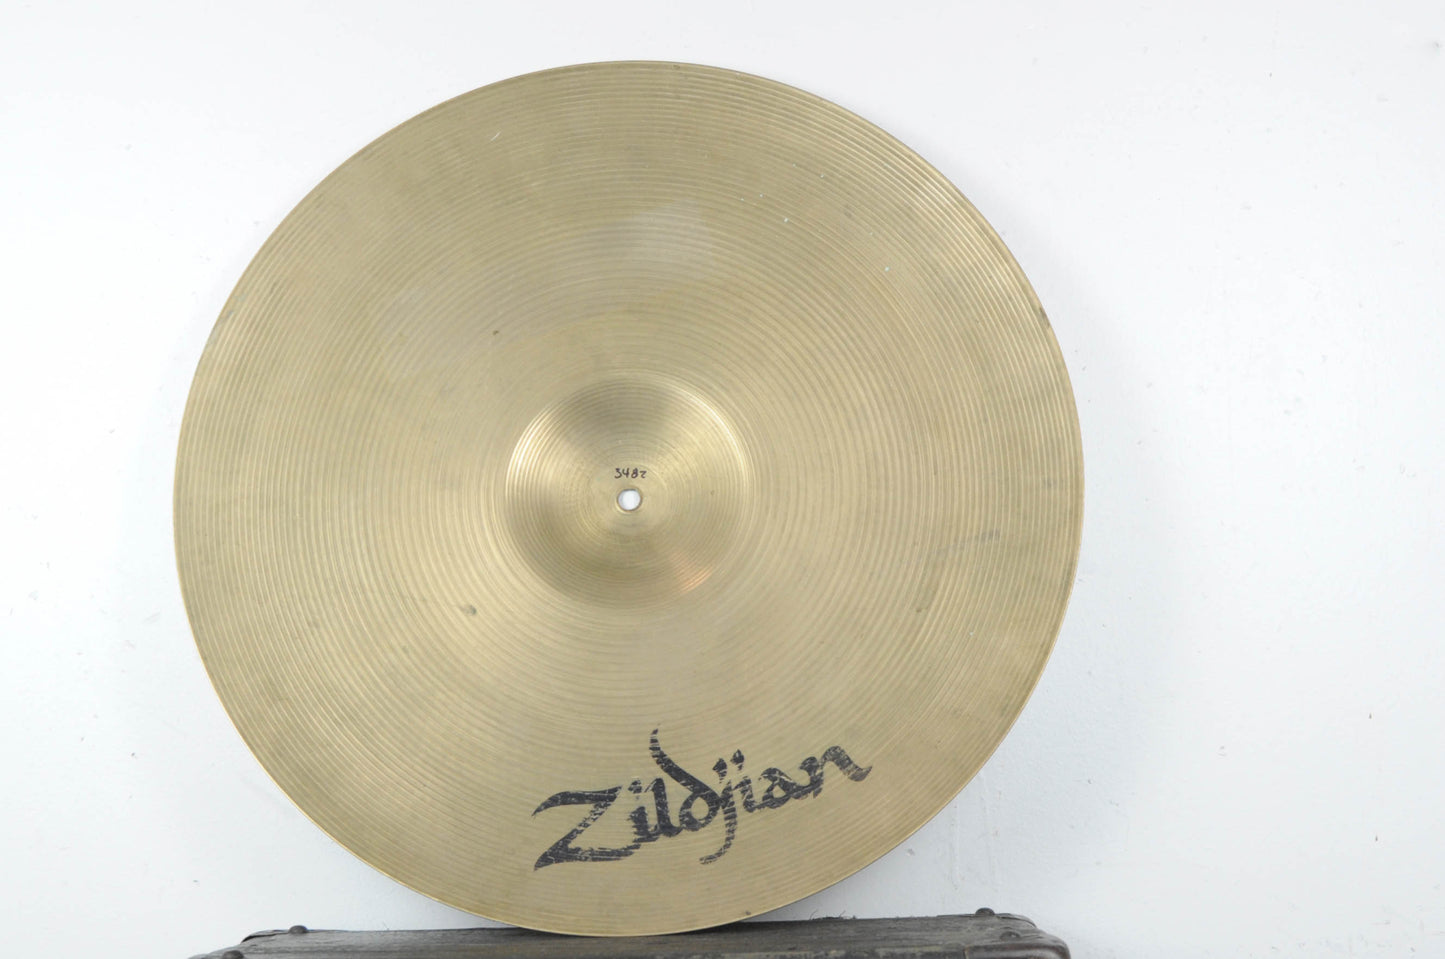 1990s Zildjian A 21" Rock Ride Cymbal 3482g